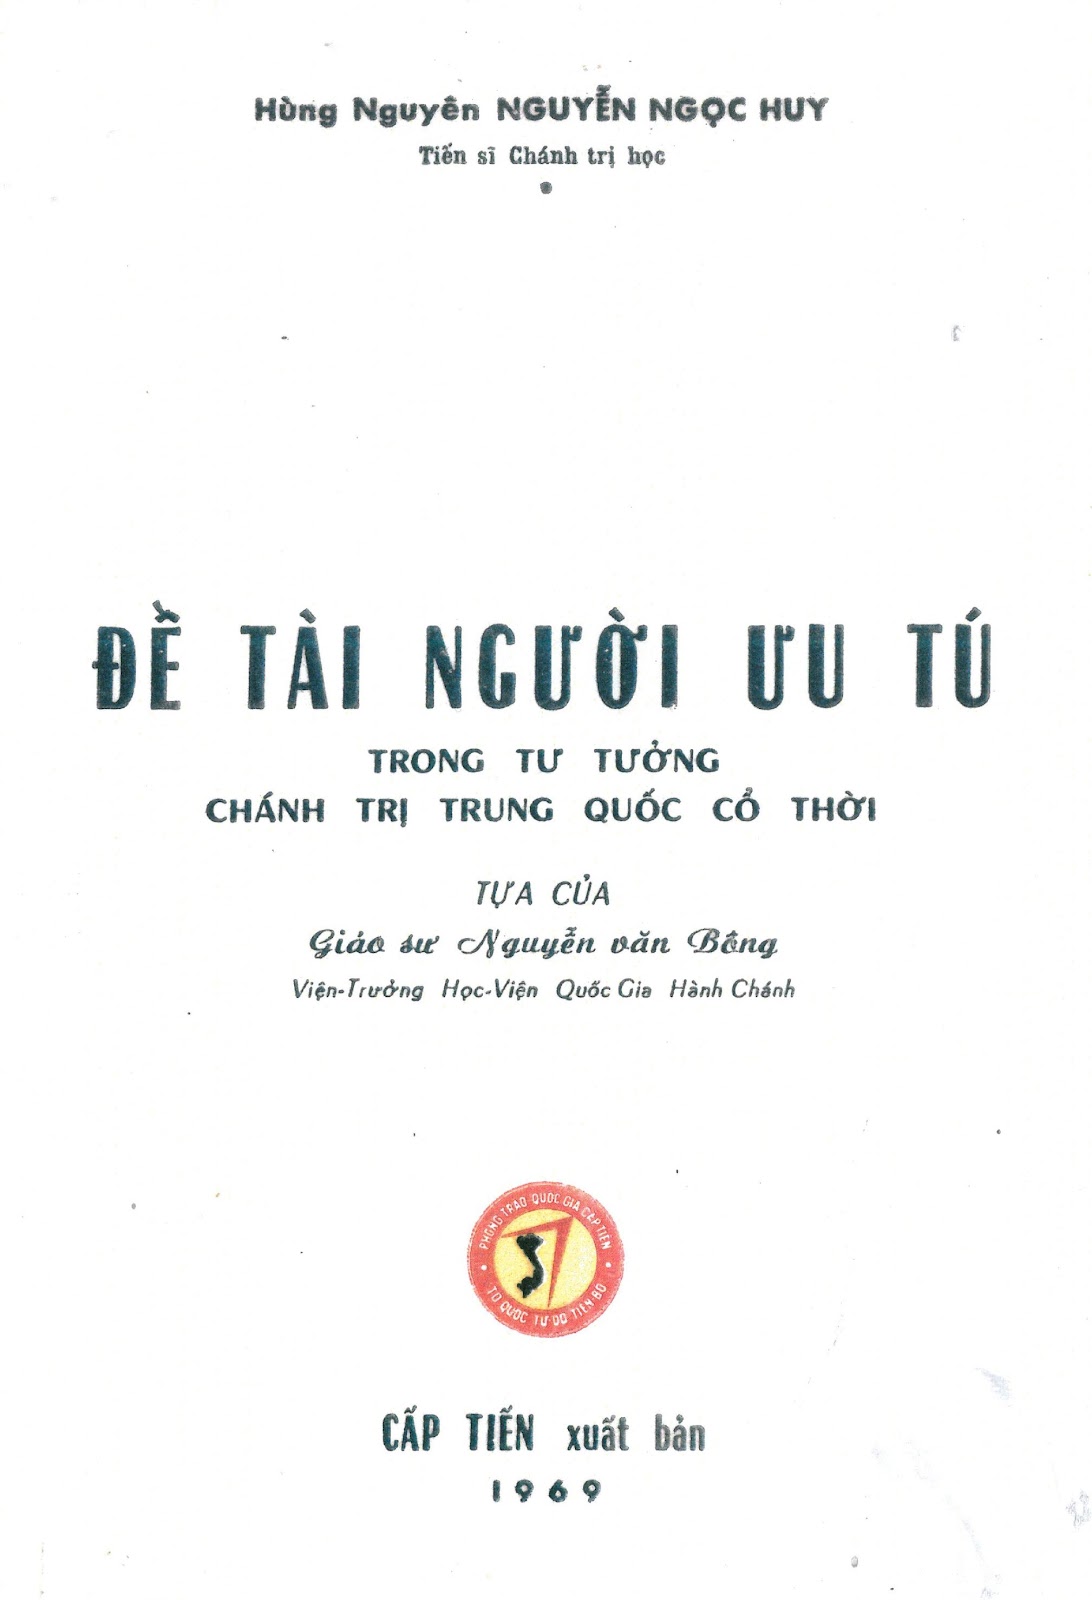 Description: NQ-De Tai Uu Tu